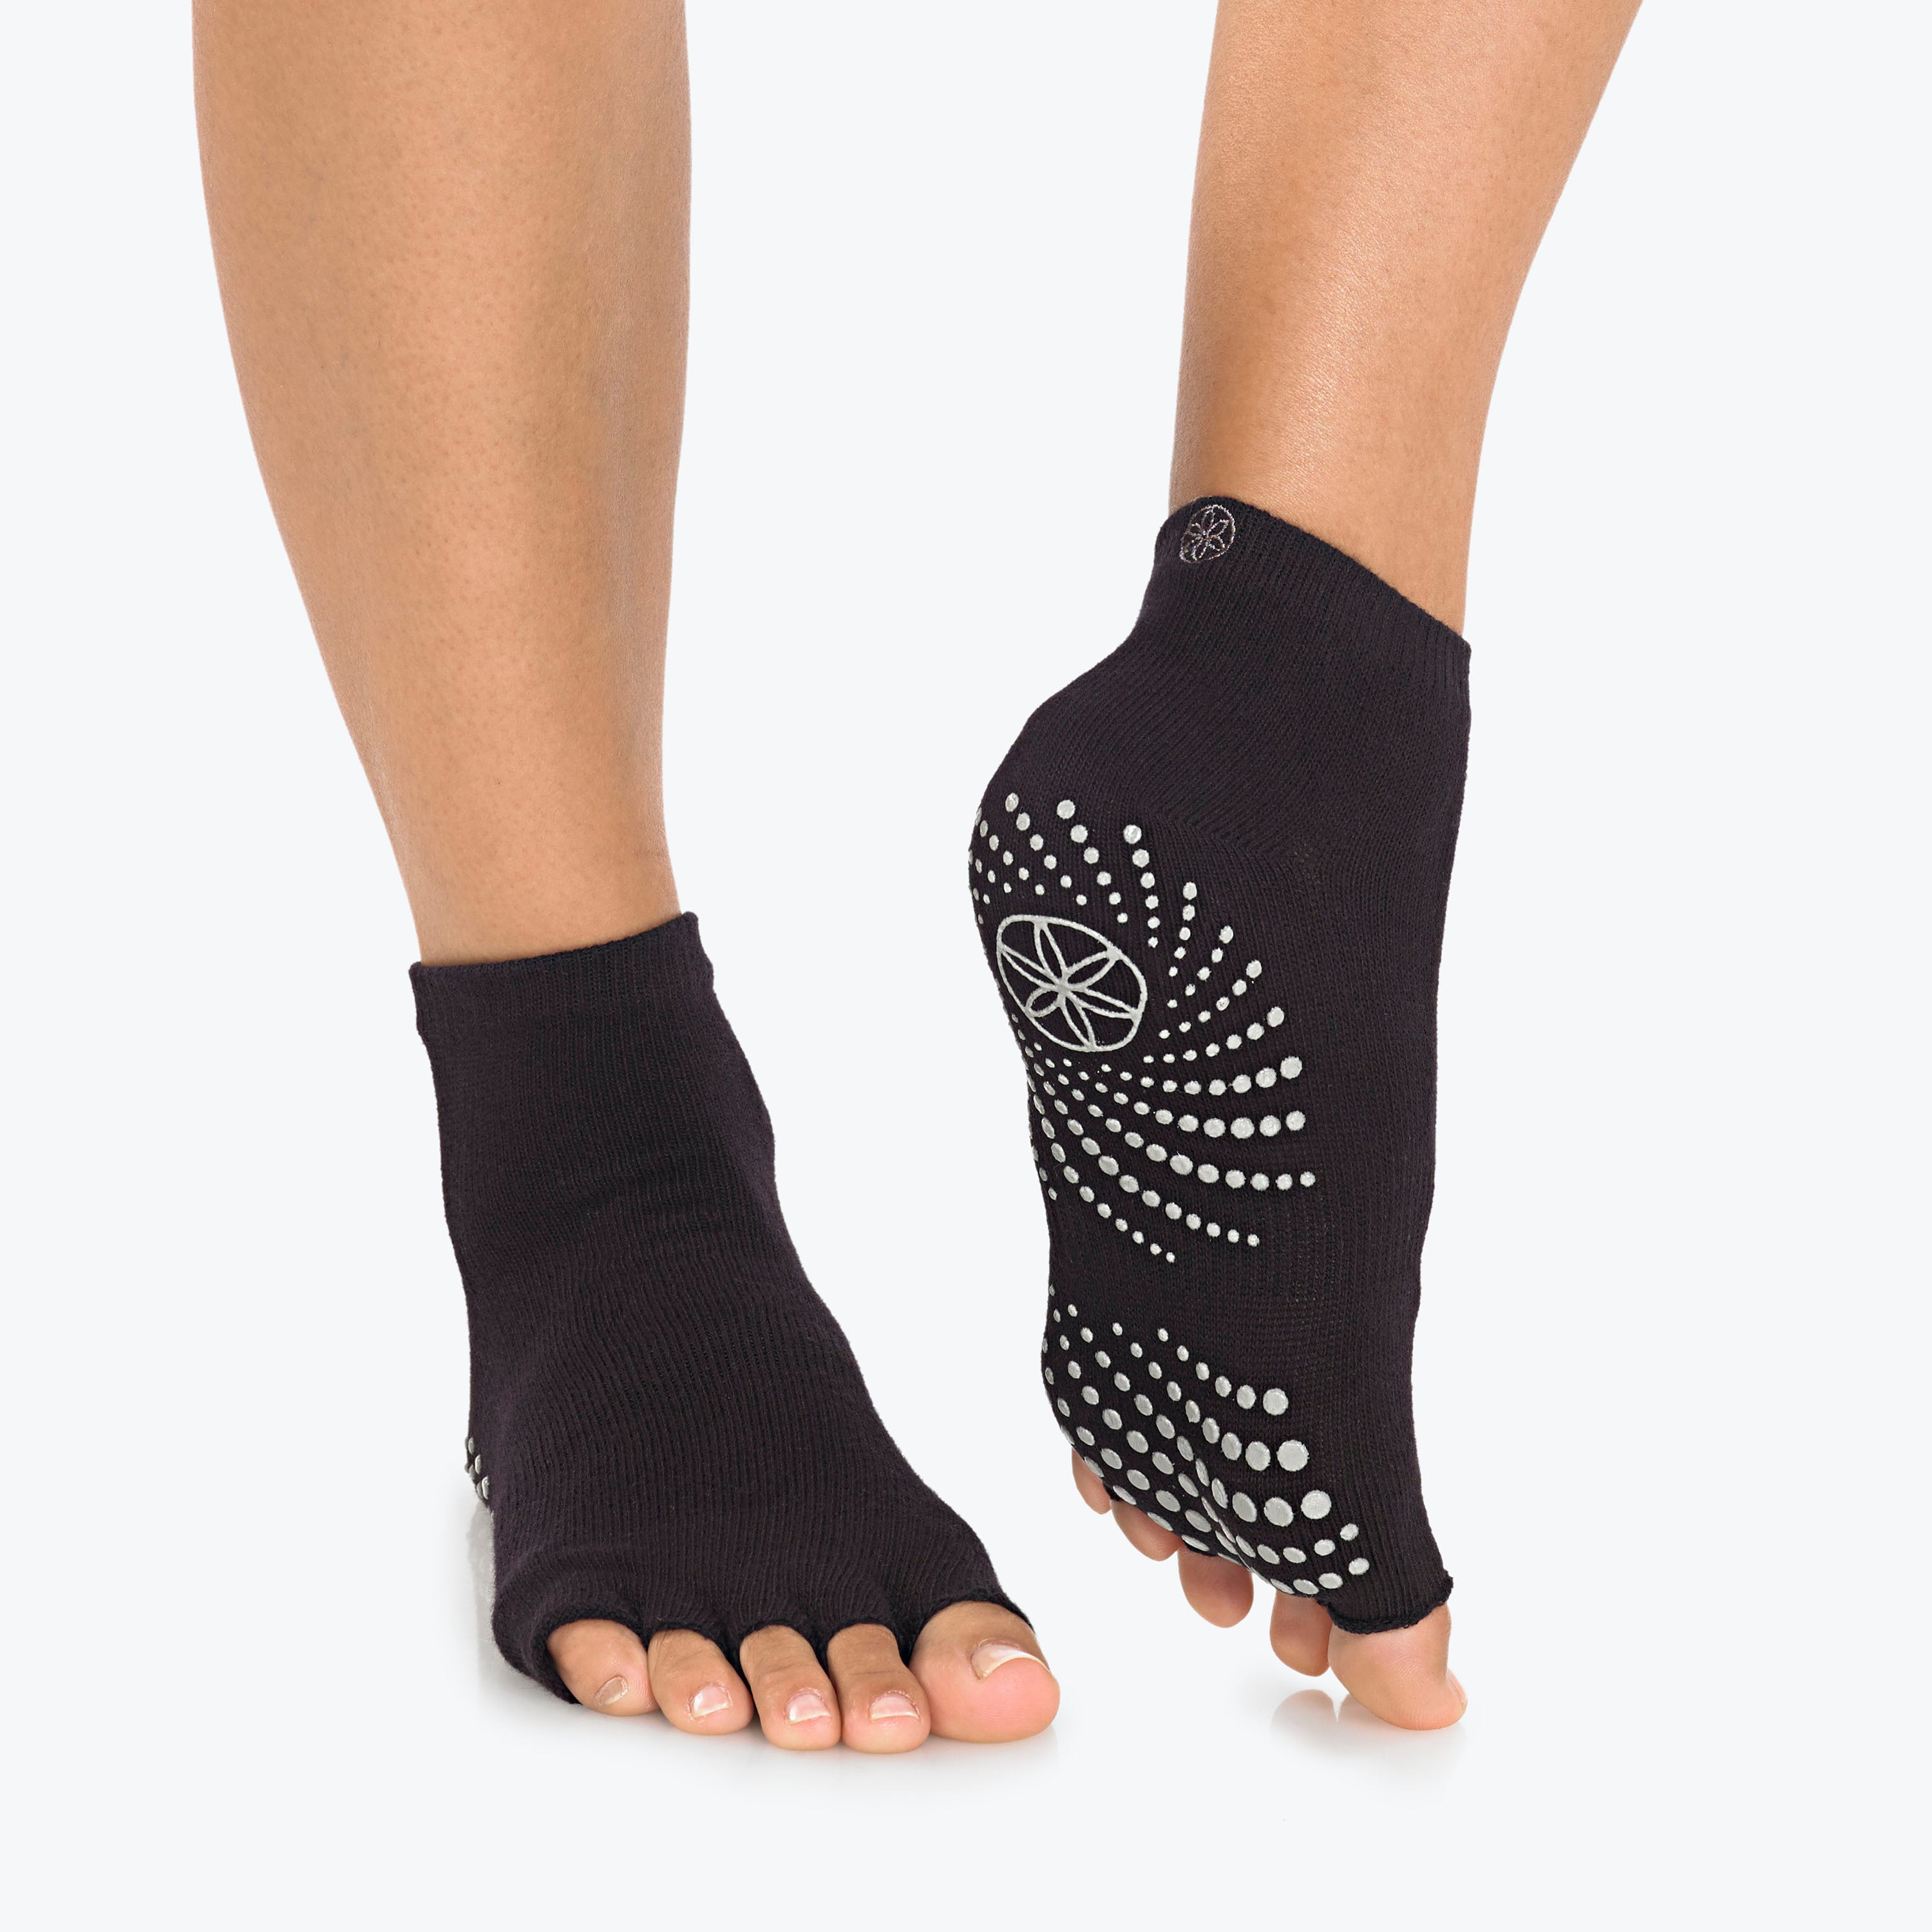 Gaiam Grippy Yoga Anklets Toeless Socks Nonslip Grip for Good Balance